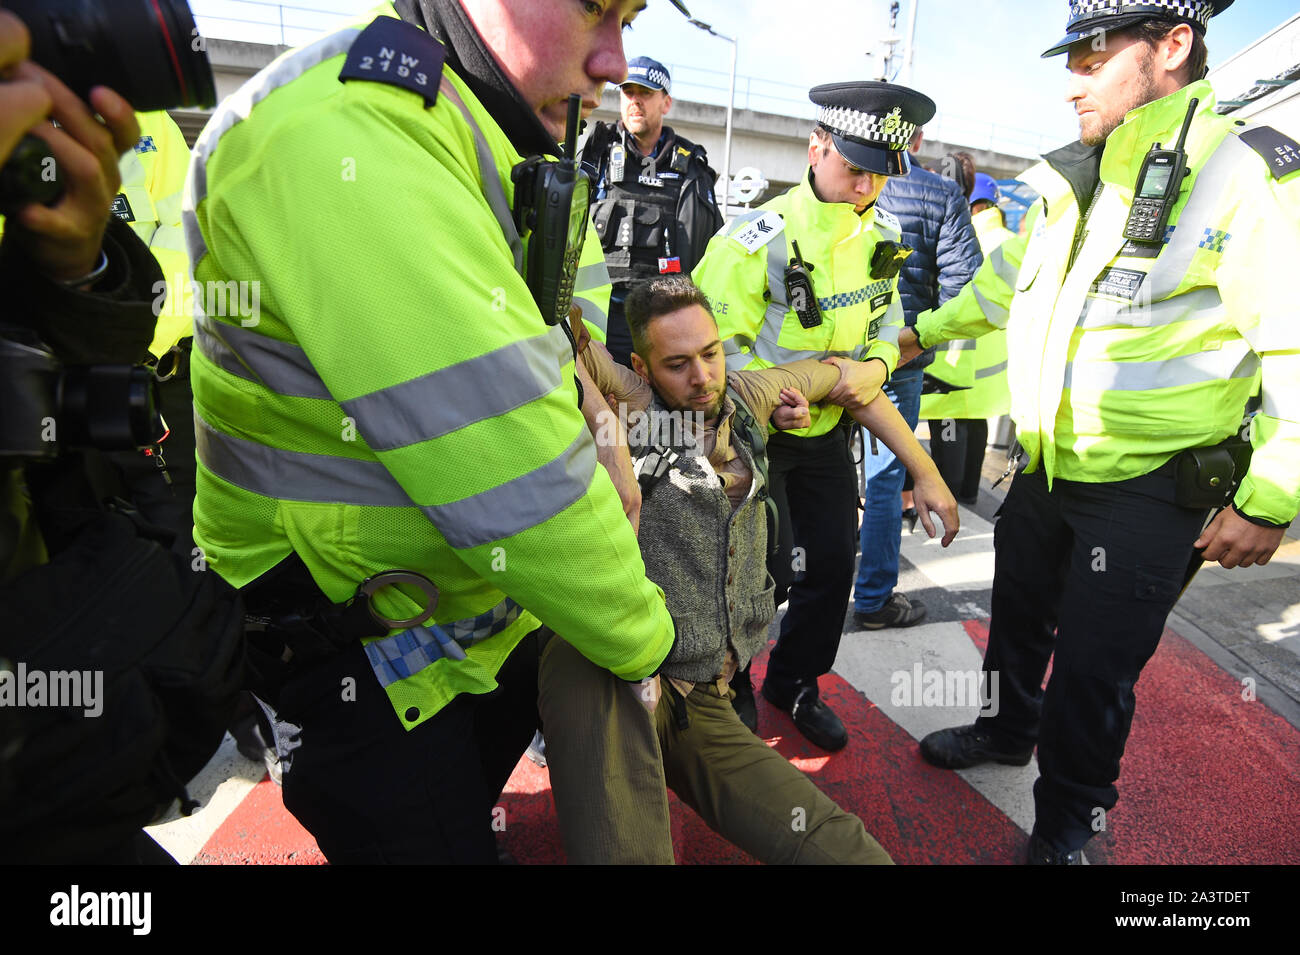 Ein Mann wird von der Polizei entfernt, nachdem Aktivisten einen "Hongkong" Stil der Sperrung der Ausfahrt aus dem Bahnhof zum City Airport, London inszeniert, während ein Aussterben Rebellion Klimawandel protestieren. Stockfoto